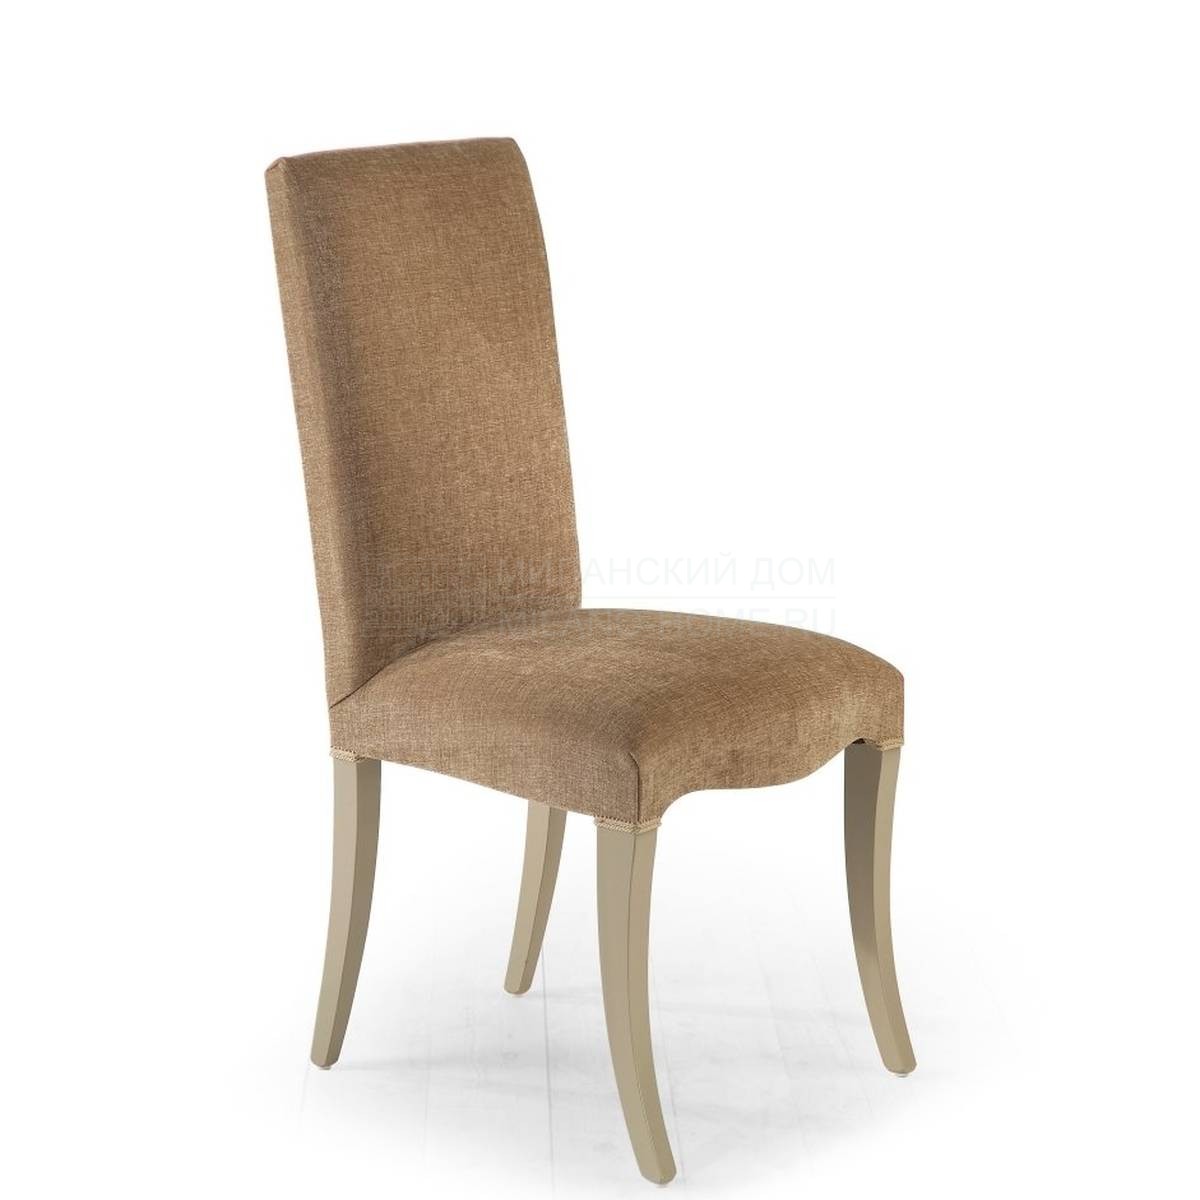 Стул Iris padded chair из Италии фабрики MARIONI